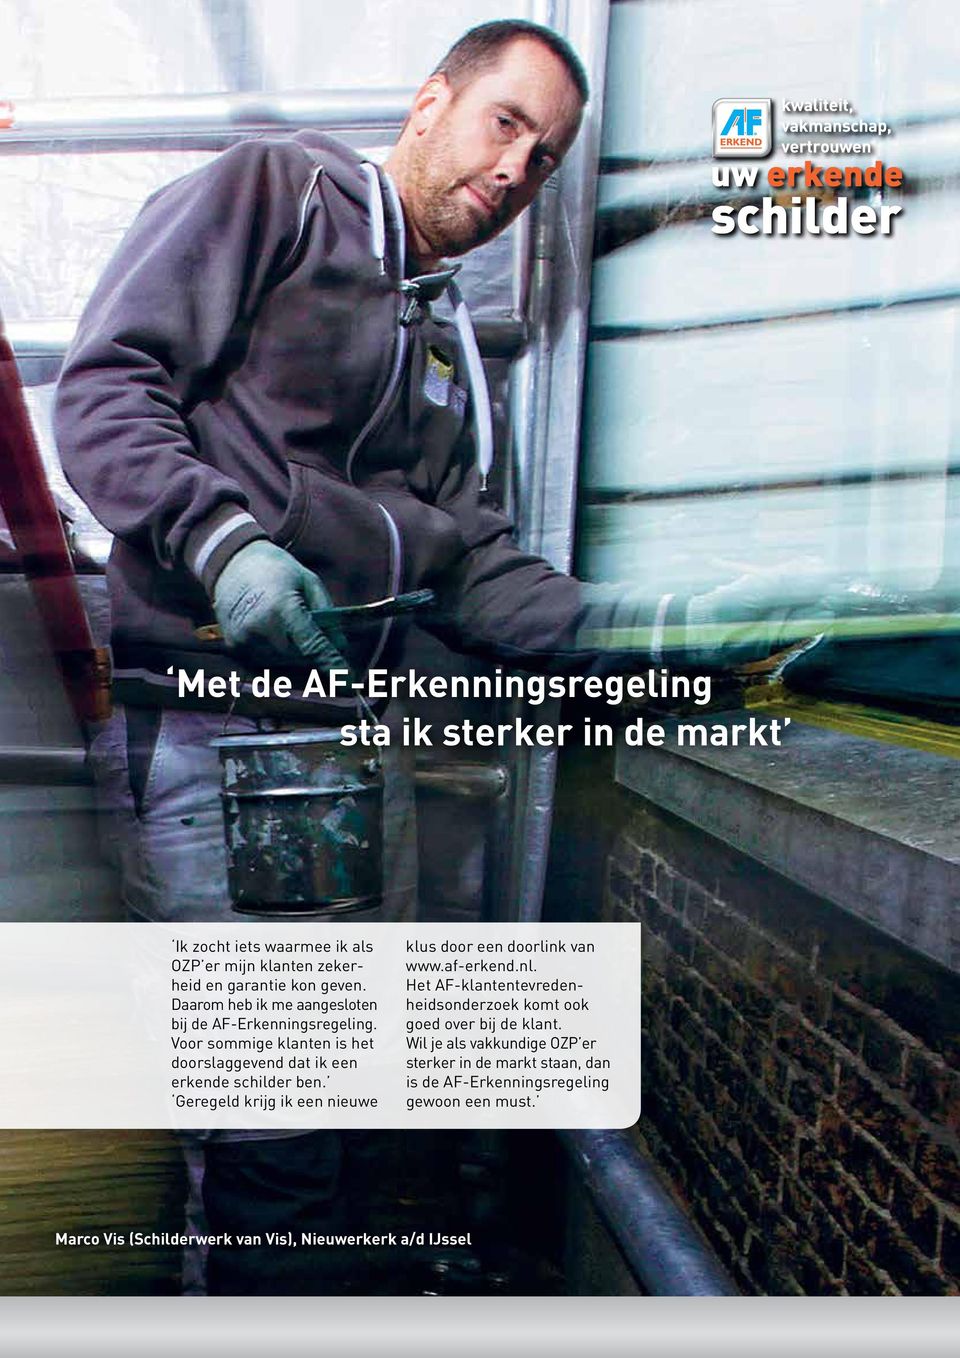 Geregeld krijg ik een nieuwe klus door een doorlink van www.af-erkend.nl. Het AF-klantentevredenheidsonderzoek komt ook goed over bij de klant.